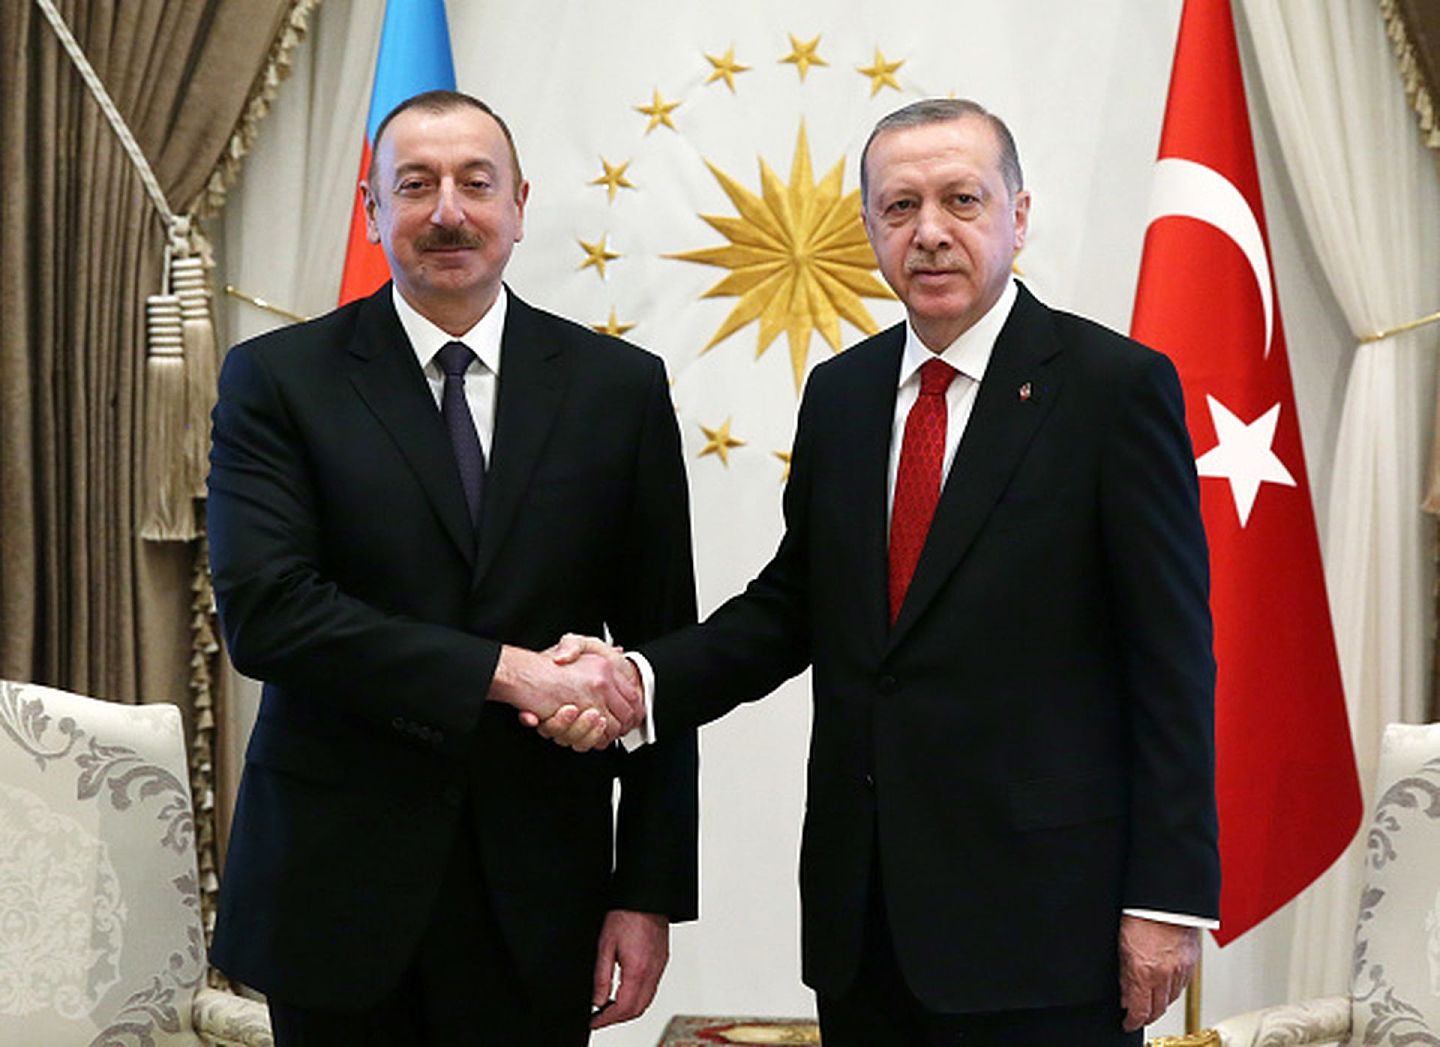 在土耳其独联体地缘战略的四面楚歌声中，只有阿塞拜疆仍然保持着与安卡拉方面的良好互动。图为2018年4月25日，土耳其总统埃尔多安（Recep Tayyip Erdogan）在安卡拉总统府接见到访的阿塞拜疆总统阿利耶夫（Ilham Aliyev）。（Getty Images）